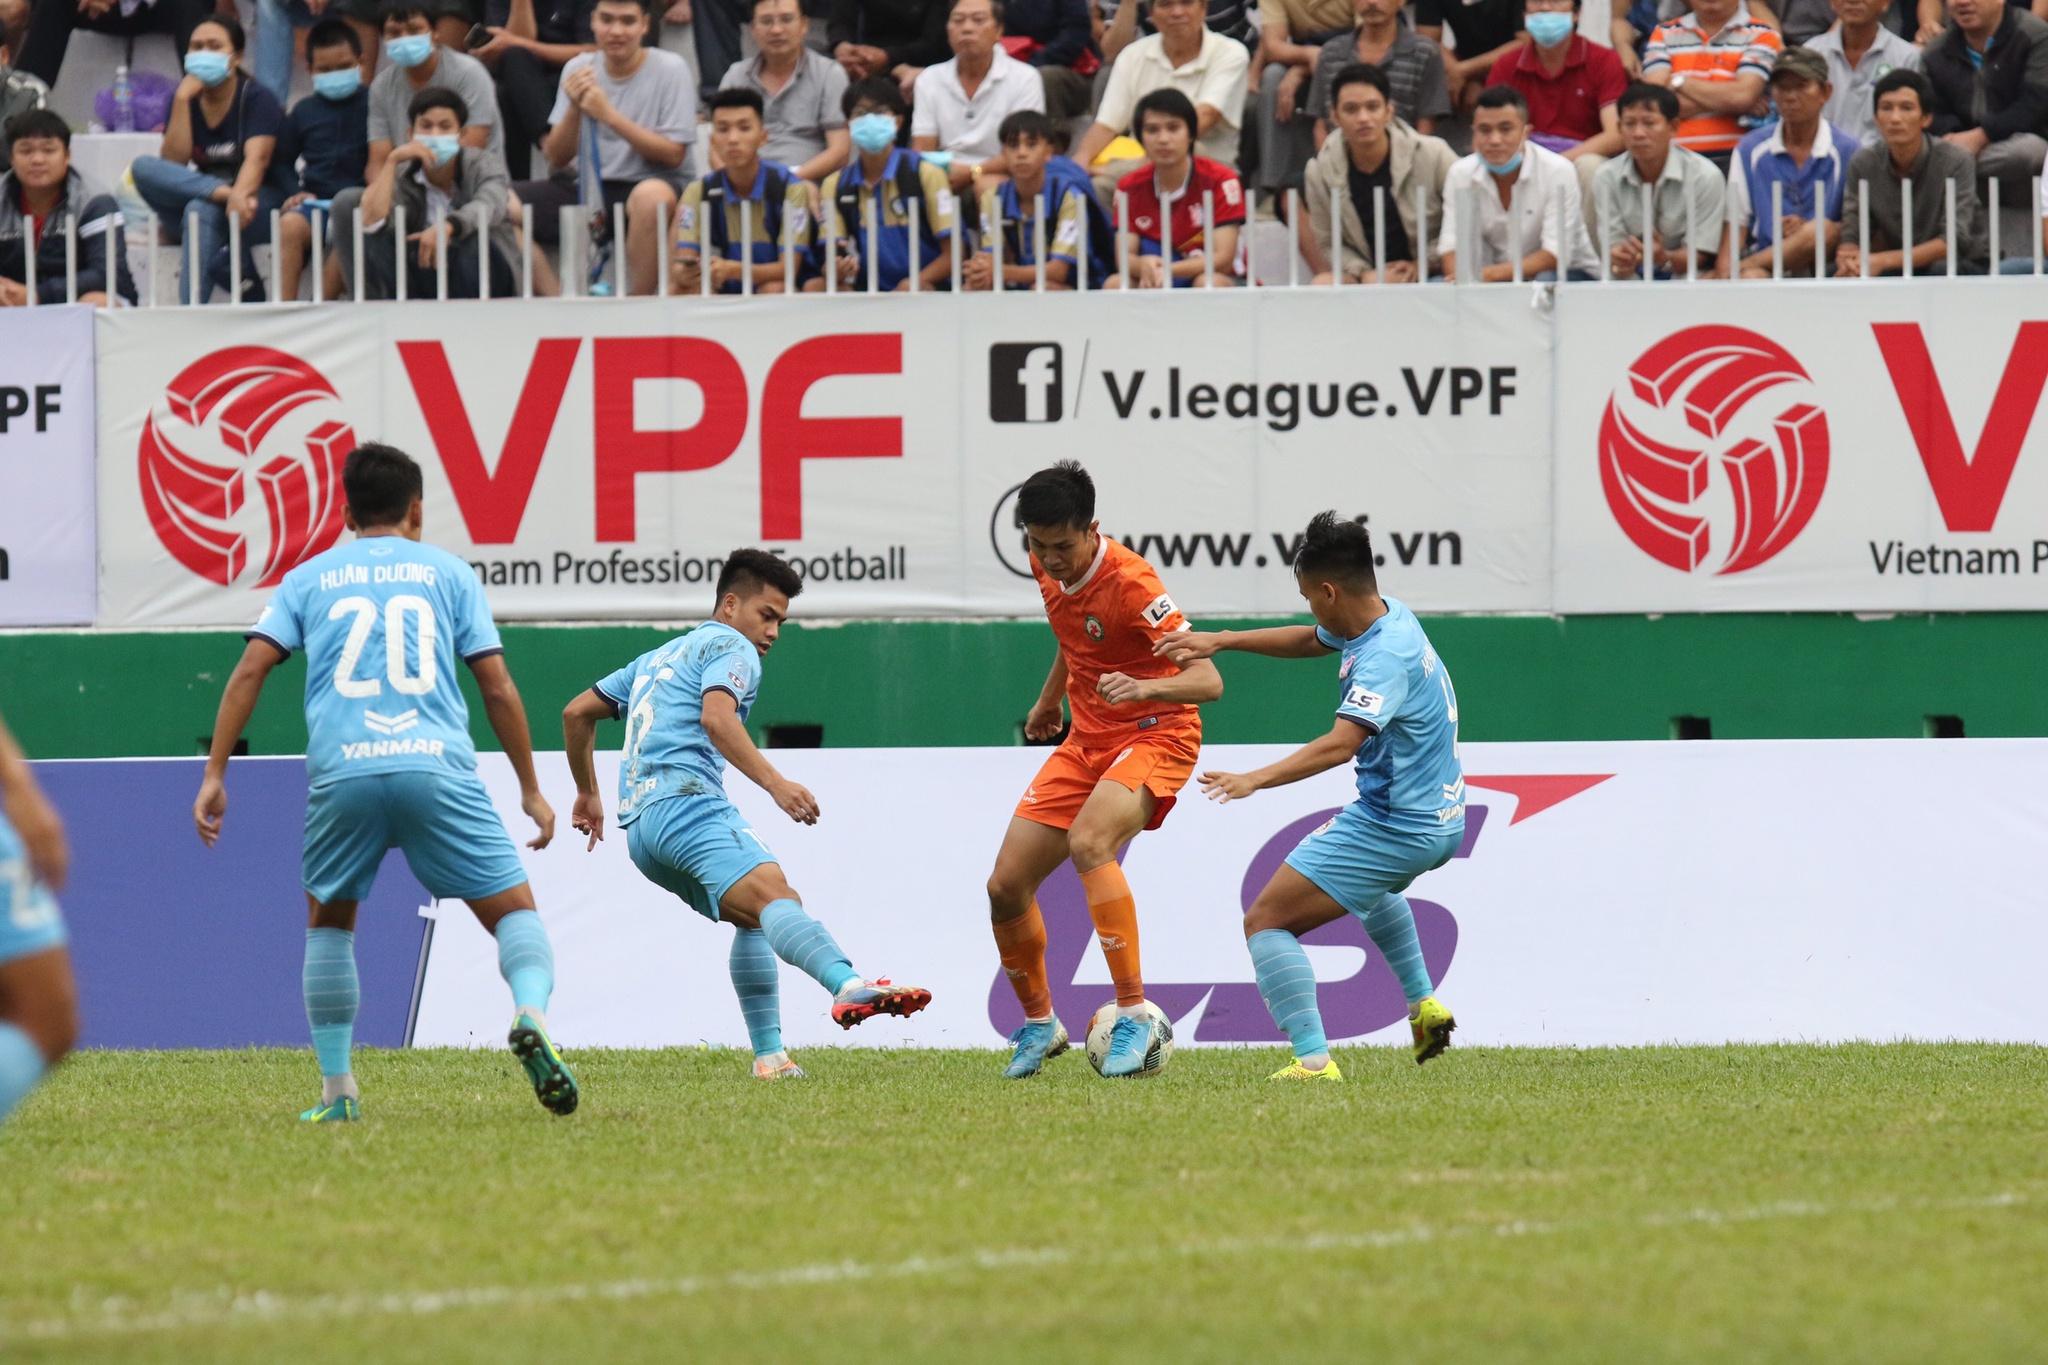 Kết quả suất lên hạng V-League: Chúc mừng CLB Bình Định, tiếc cho Bà Rịa - Vũng Tàu! - ảnh 23